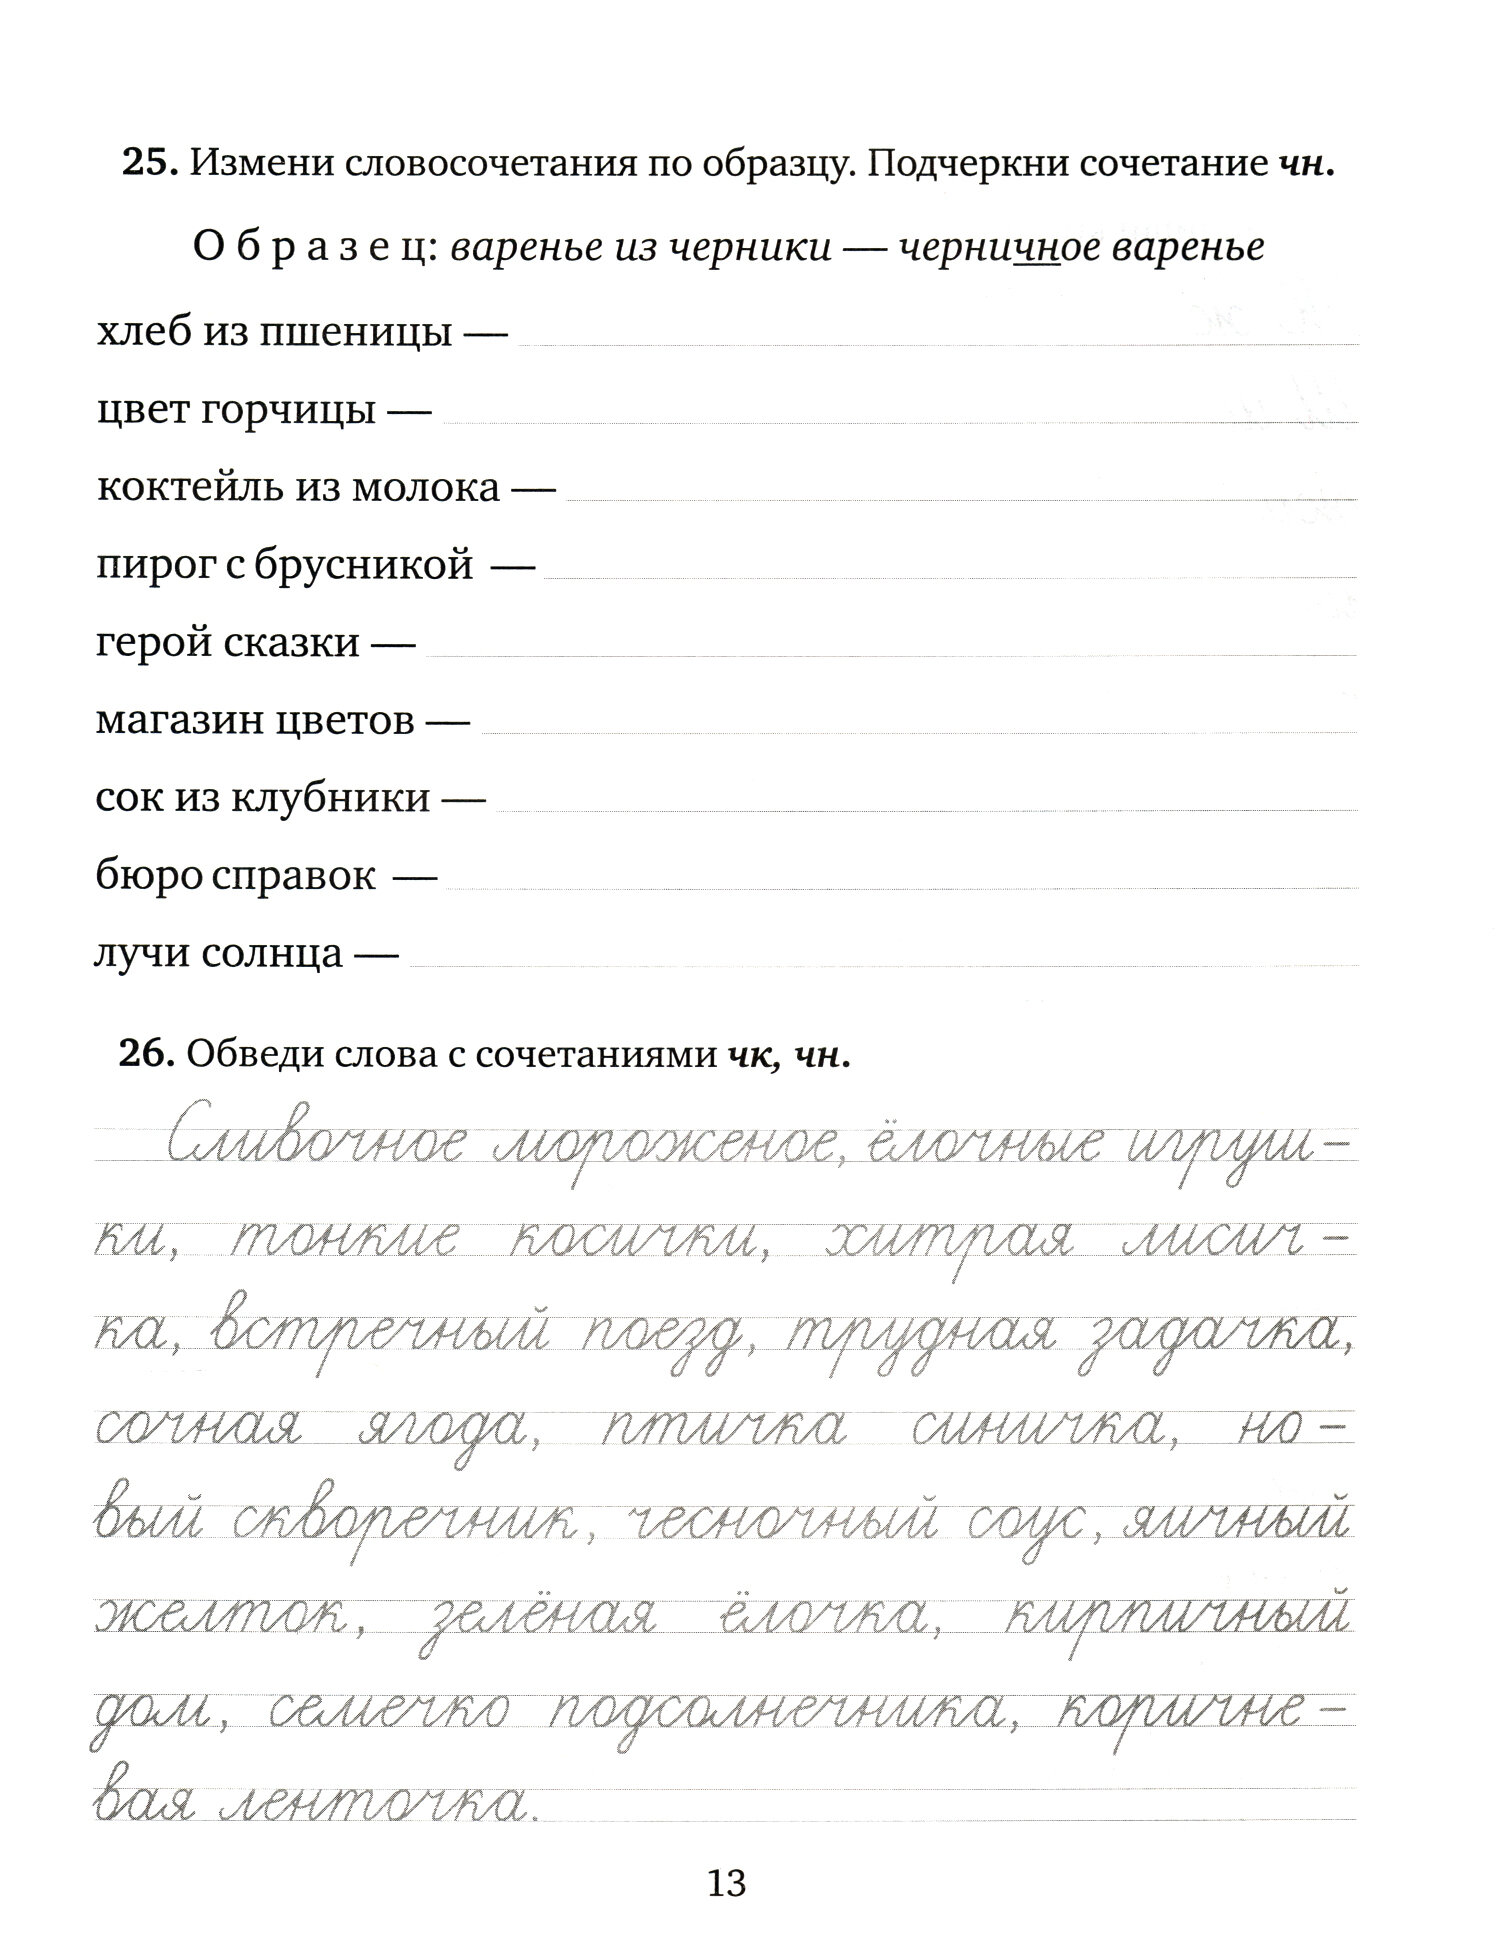 Упражнения, диктанты, контрольное списывание по русскому языку.1-4 классы - фото №10